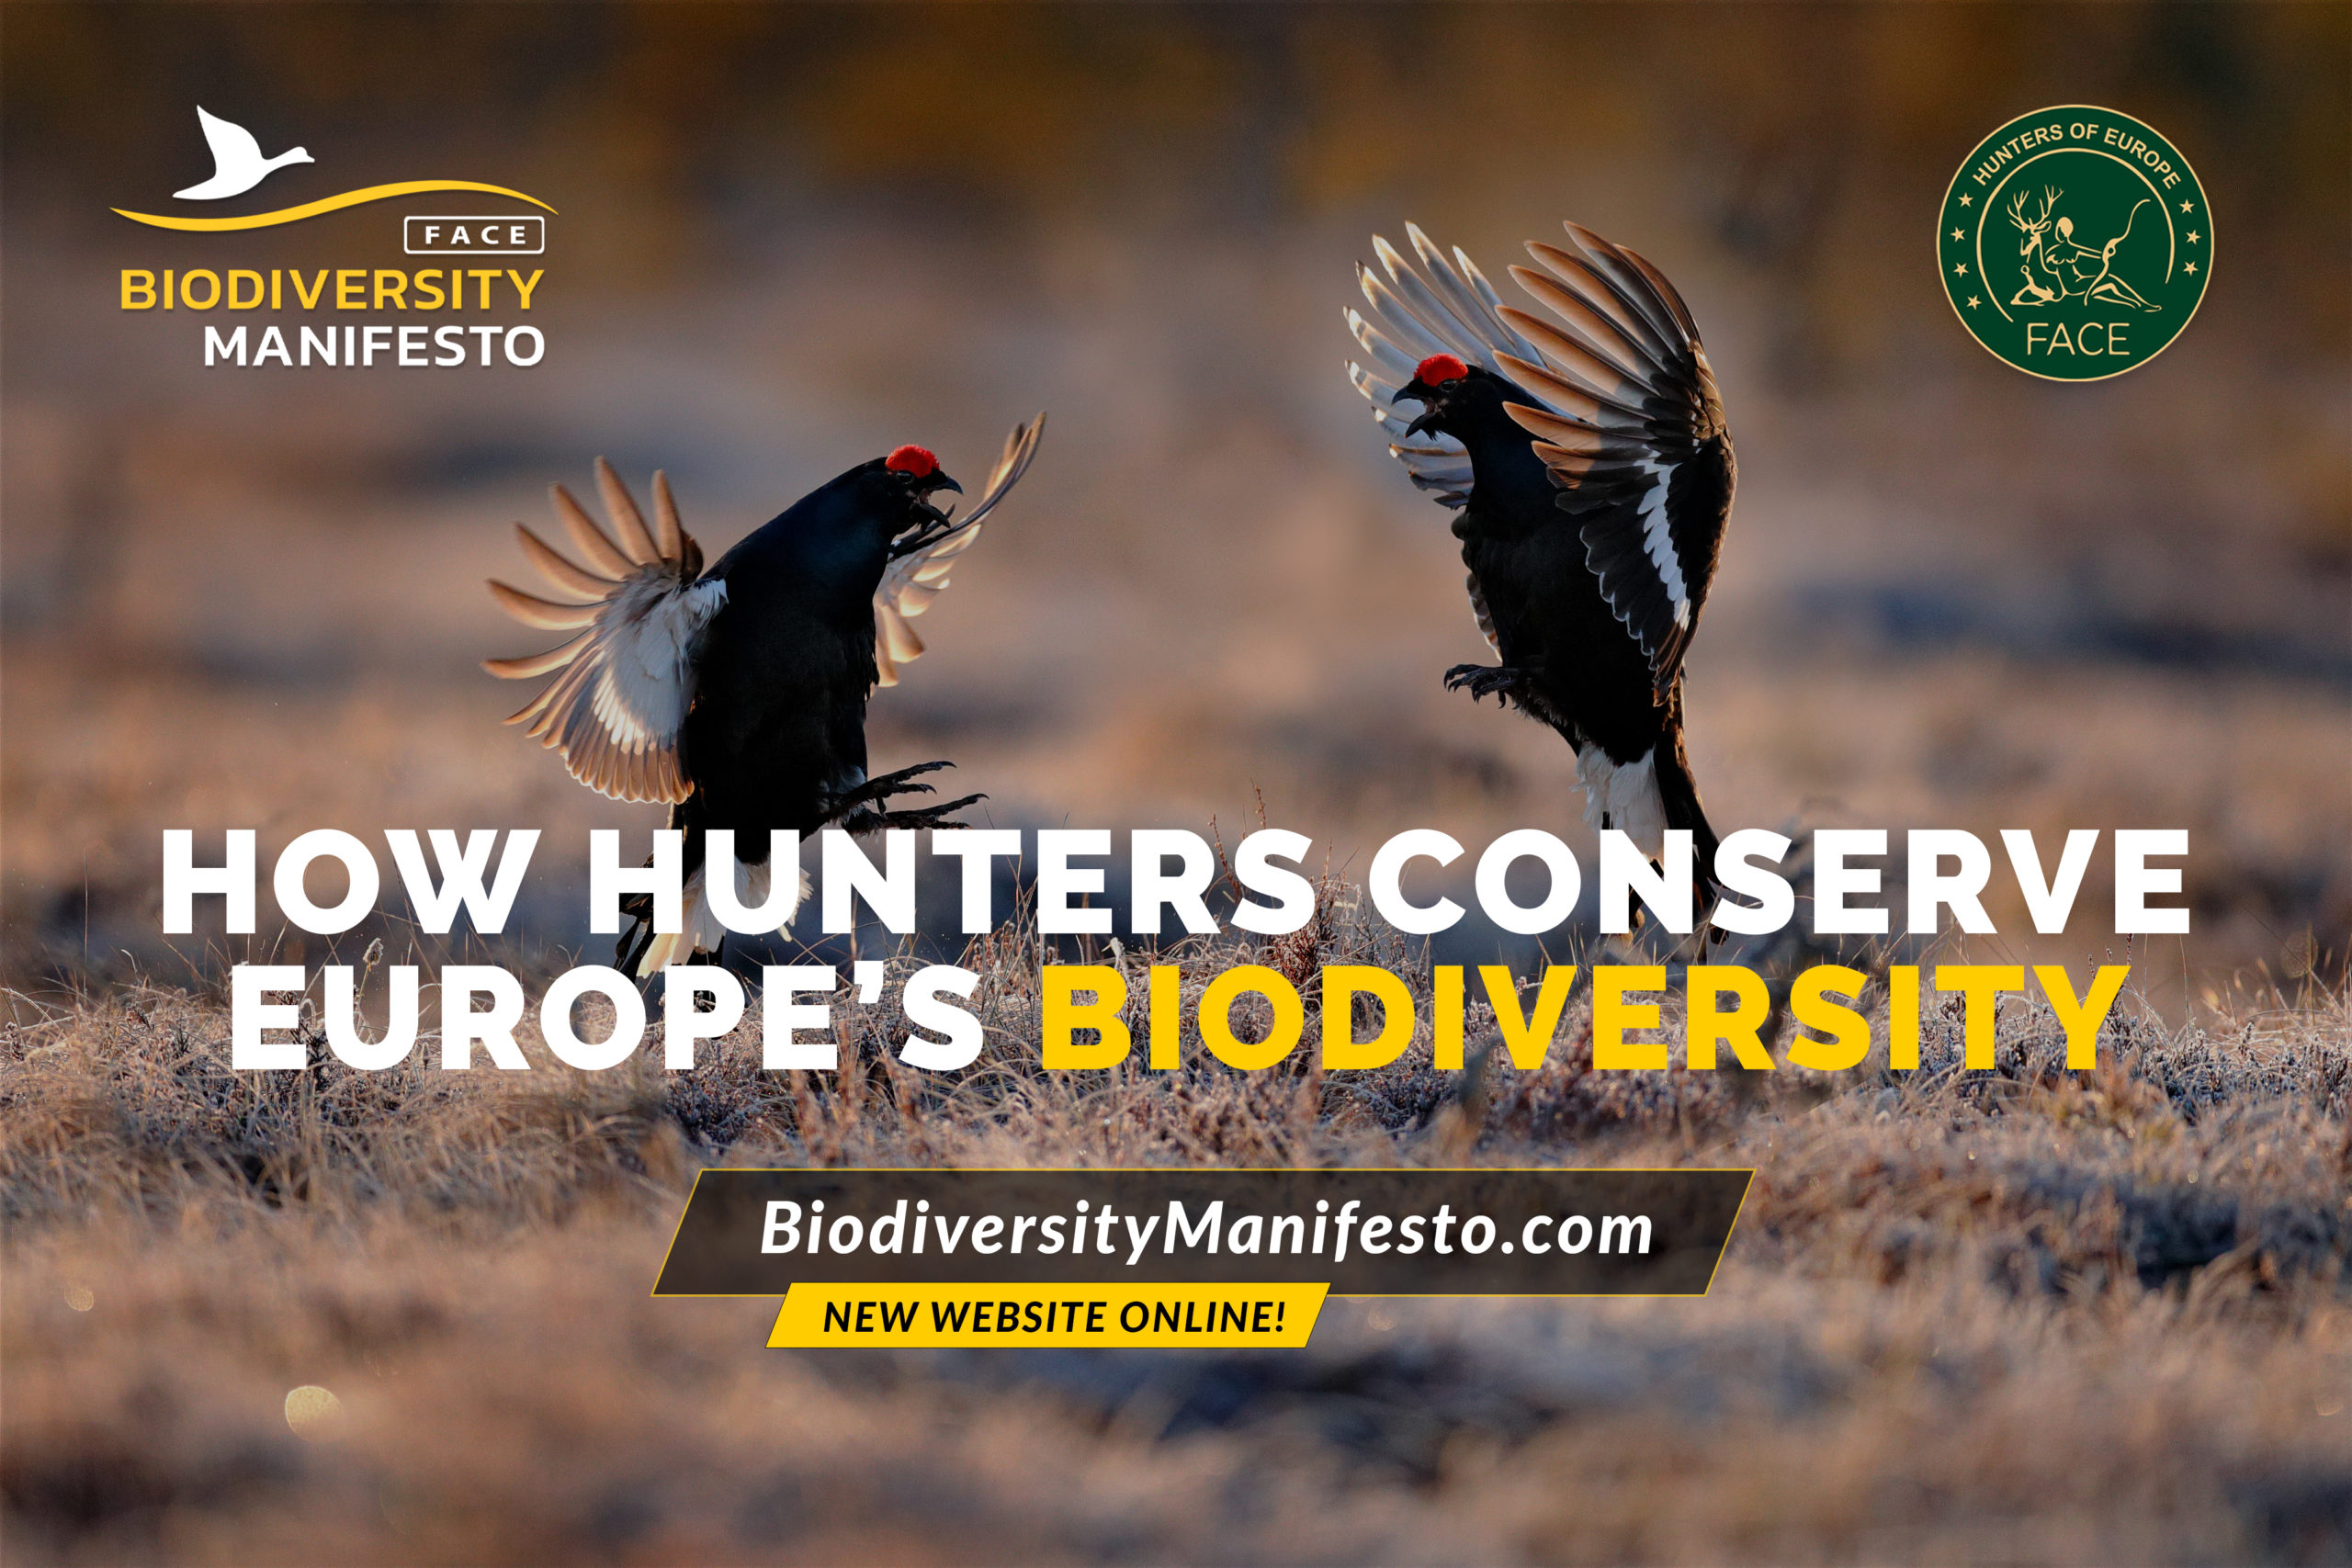 Banner: Biodiversity Manifesto